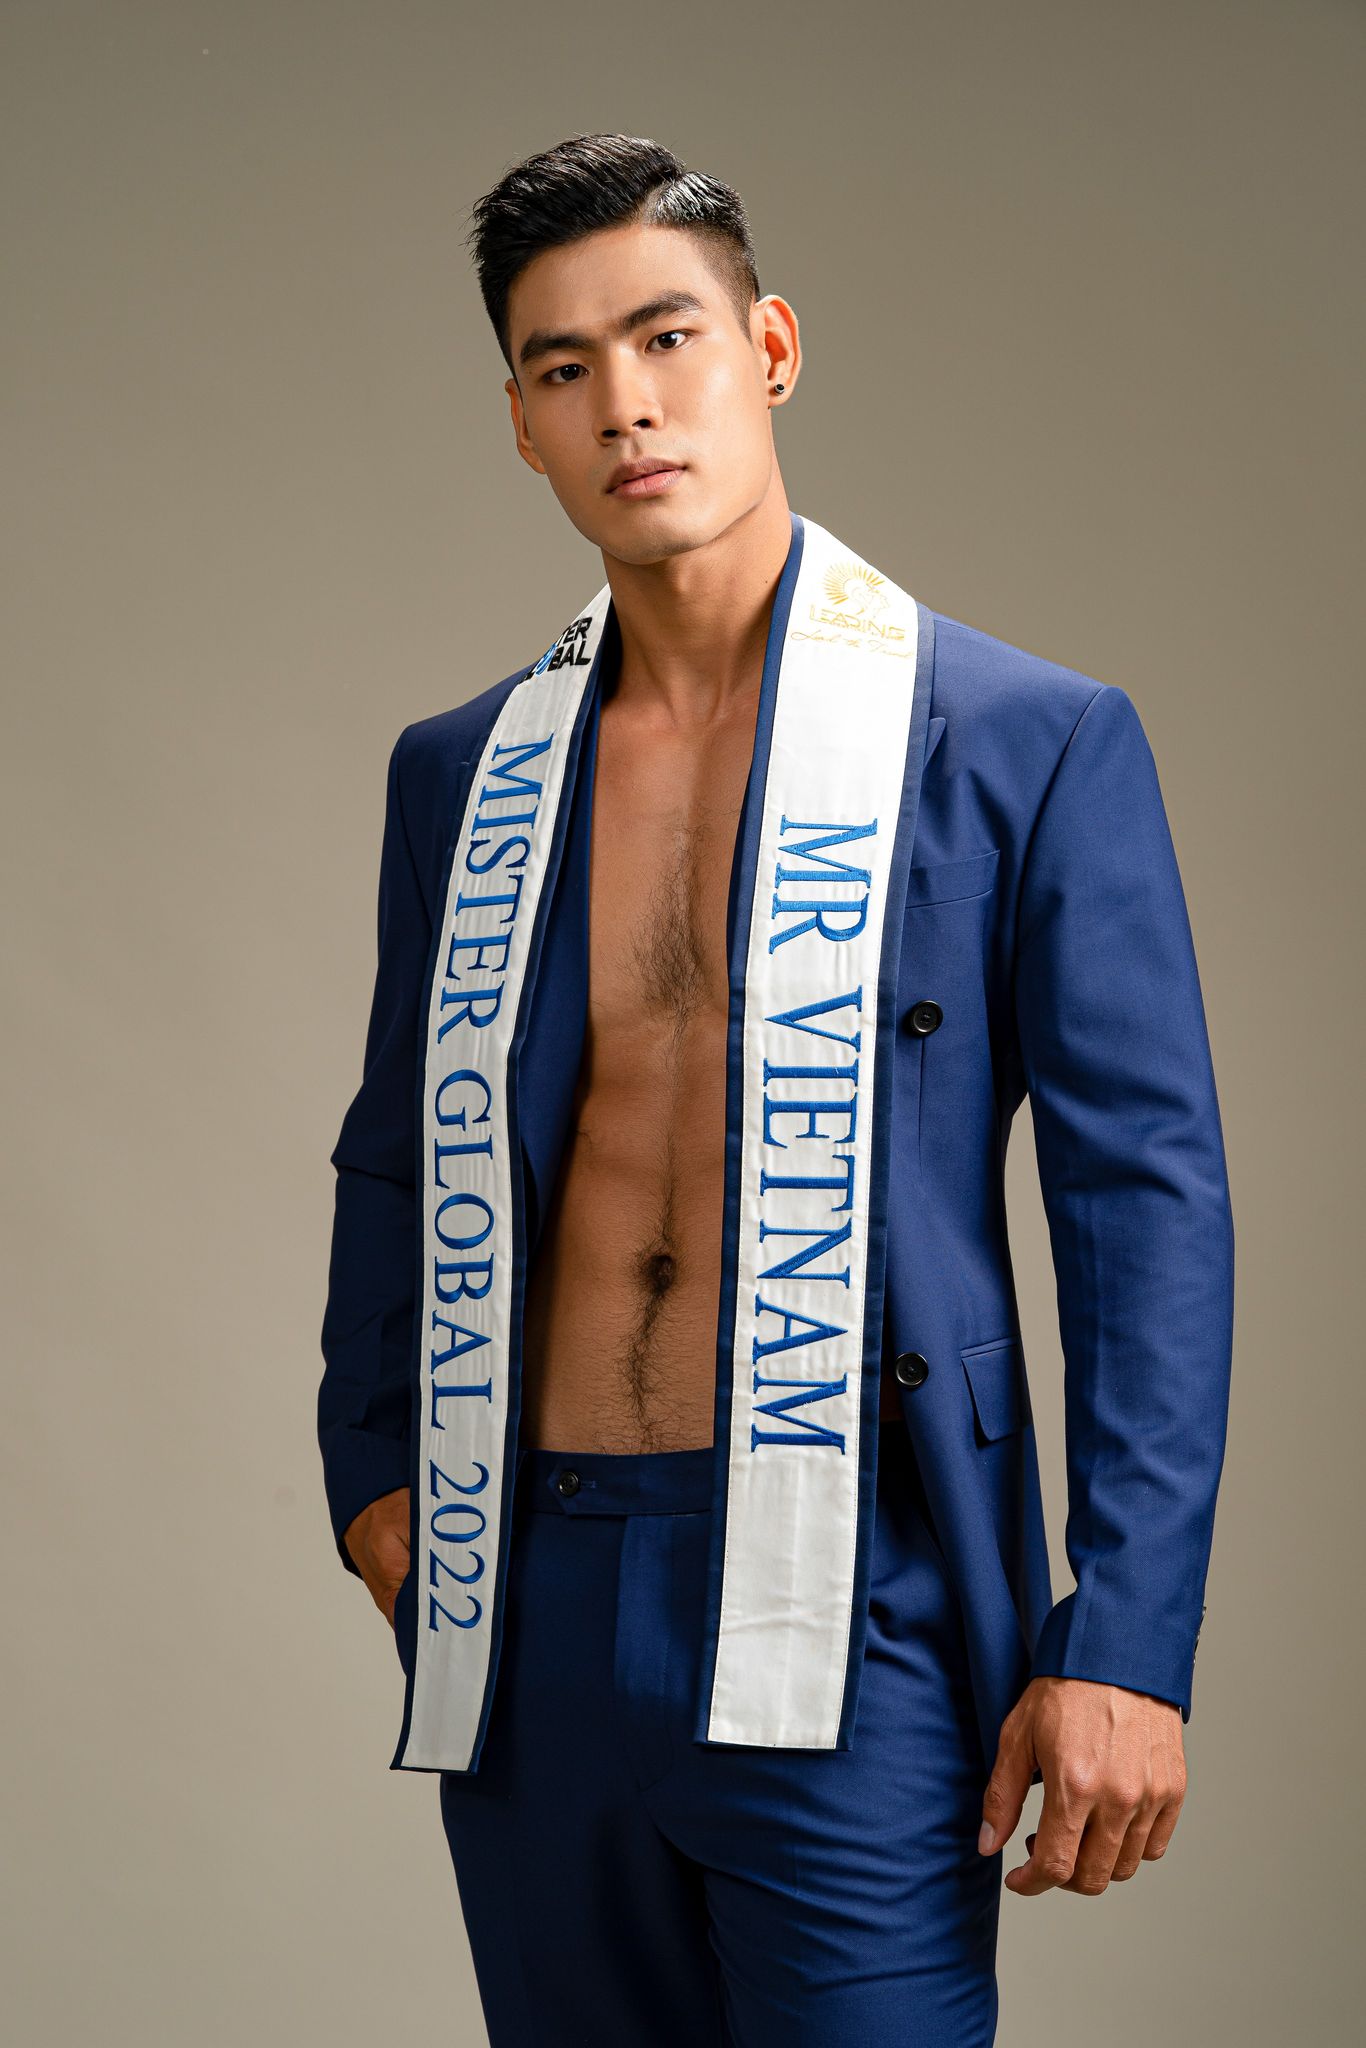 Đại diện Mister Global Việt Nam Danh Chiếu Linh tung ảnh lịch lãm với vest  - Ảnh 2.